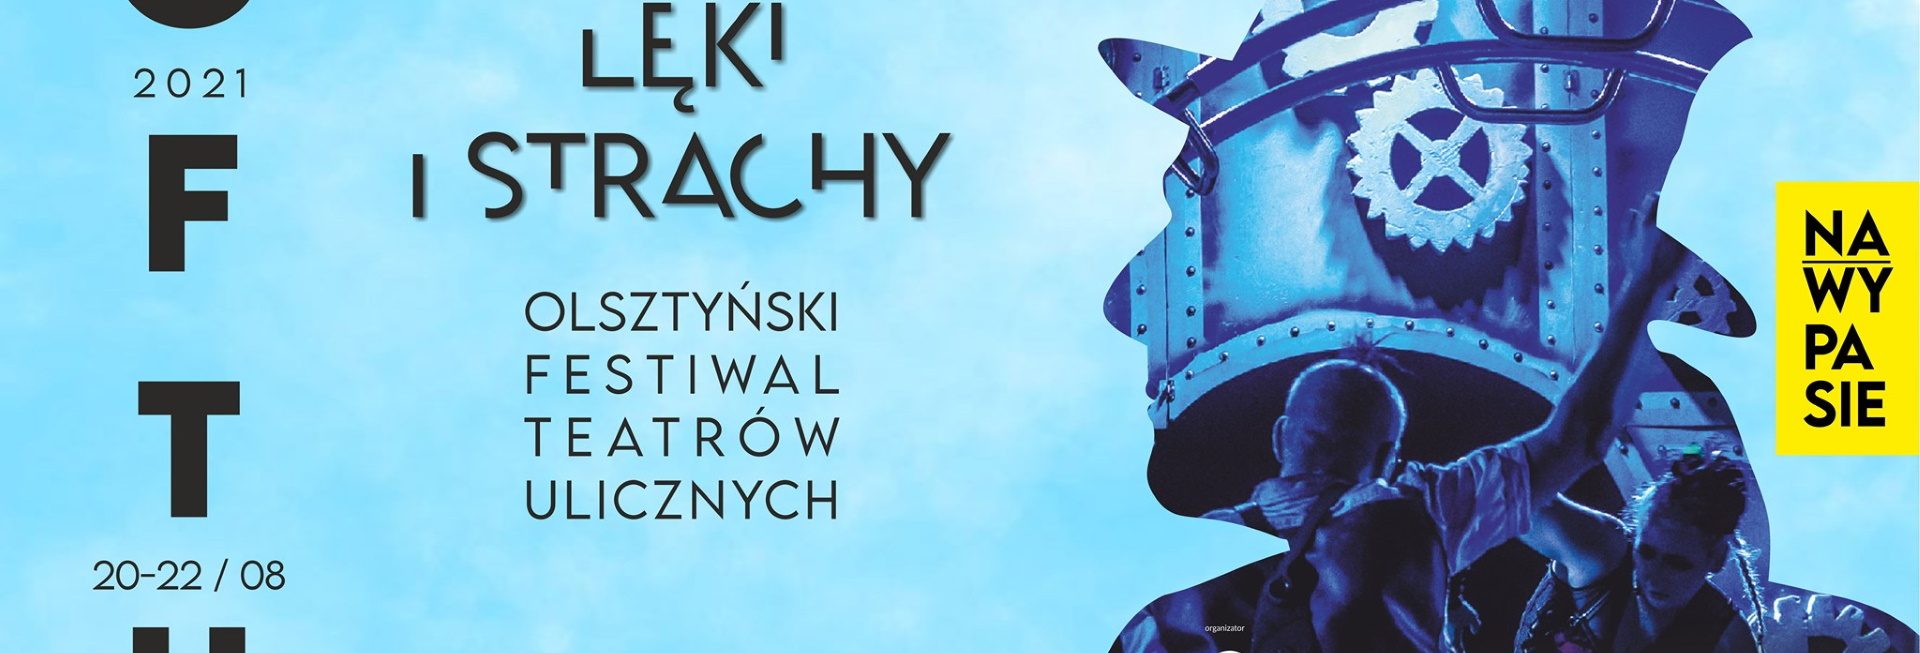 Plakat graficzny zapraszający do Olsztyna na cykliczną imprezę Olsztyński Festiwal Teatrów Ulicznych - Lęki i strachy Olsztyn 2021. Na plakacie postać z głową, która to głowa jest graficznie wykonana z metalowych części.     